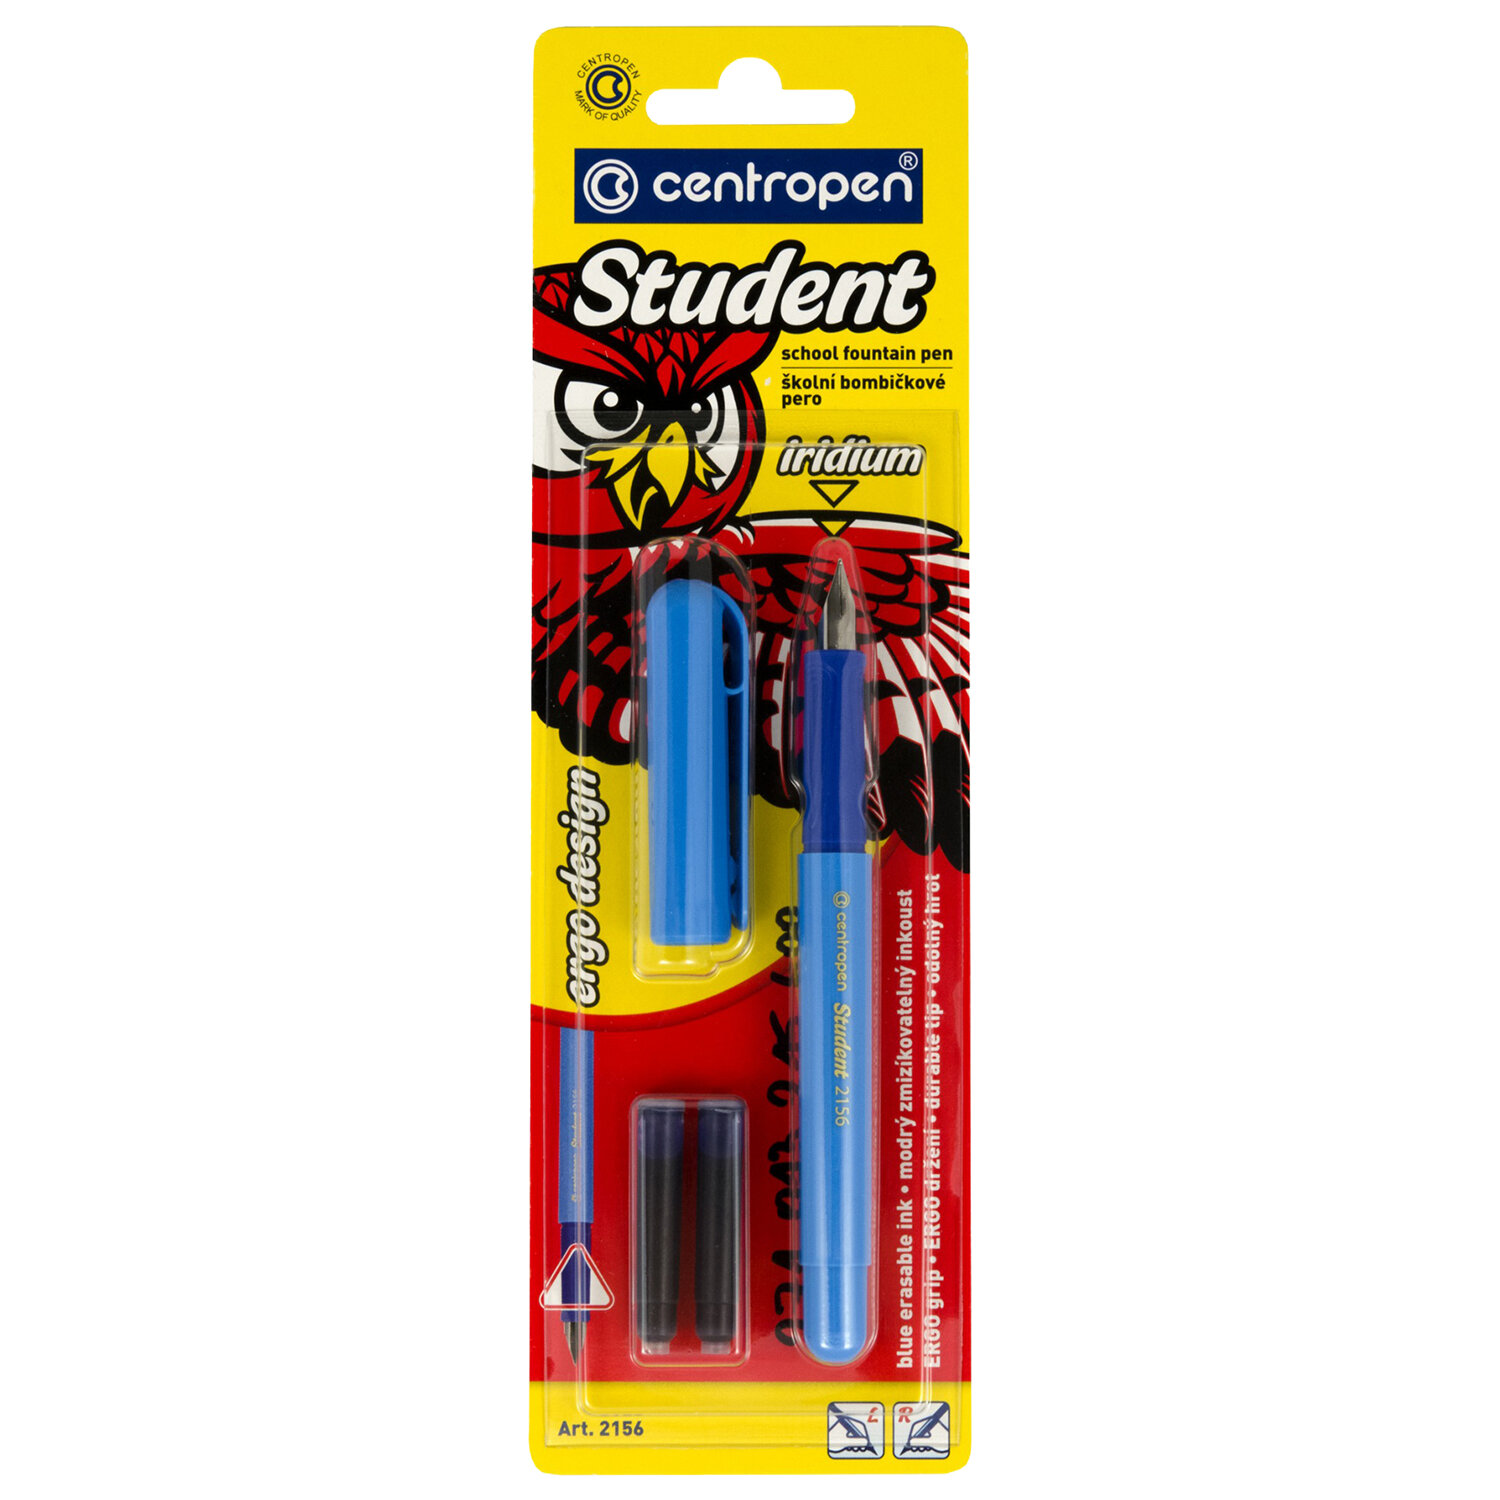 Ручка перьевая CENTROPEN Student, ассорти, иридиевое перо, 2 сменных картриджа